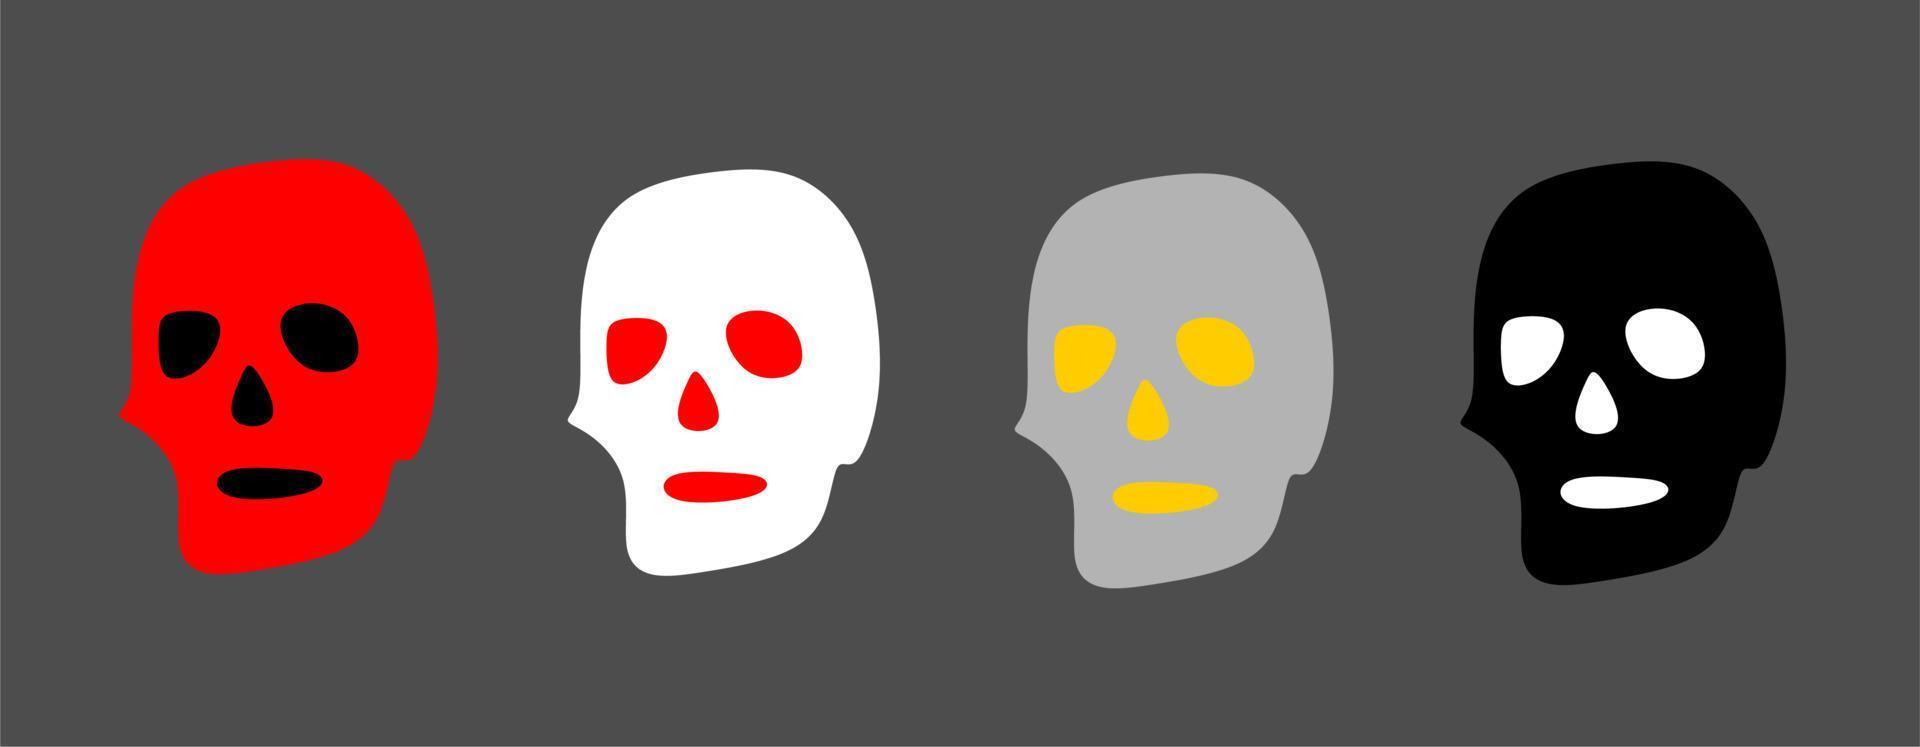 schedels. geel, rood, zwart en wit schedel. vlak stijl. halloween elementen. sim vector